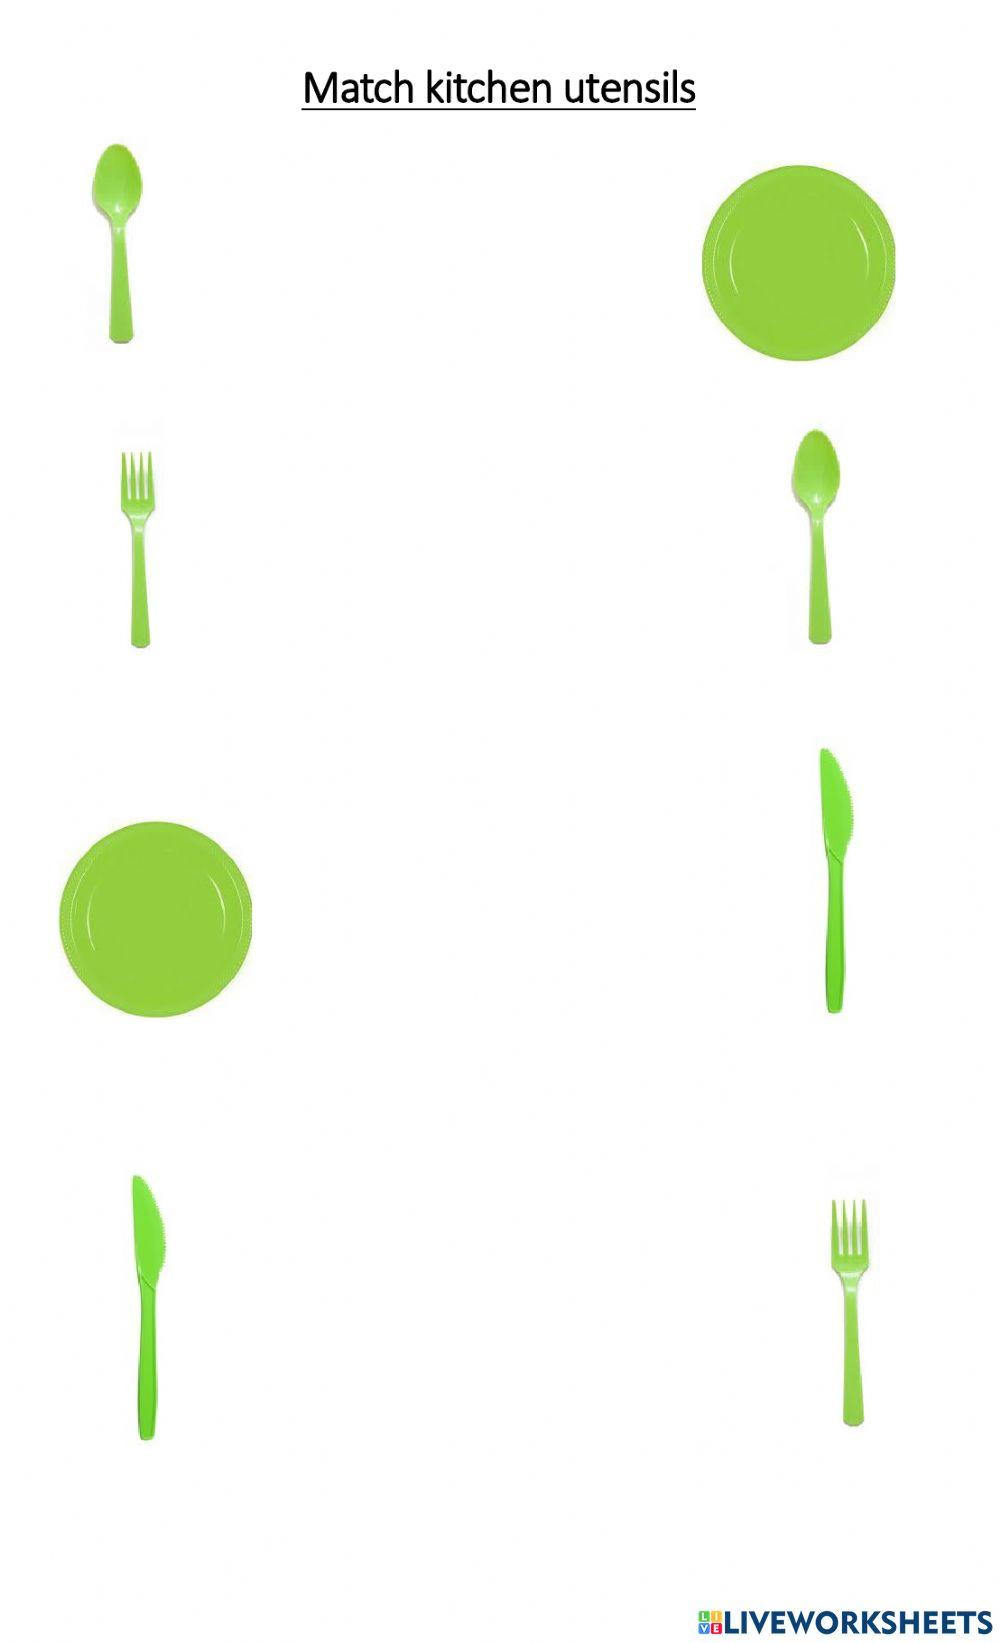 Matching kitchen utensils